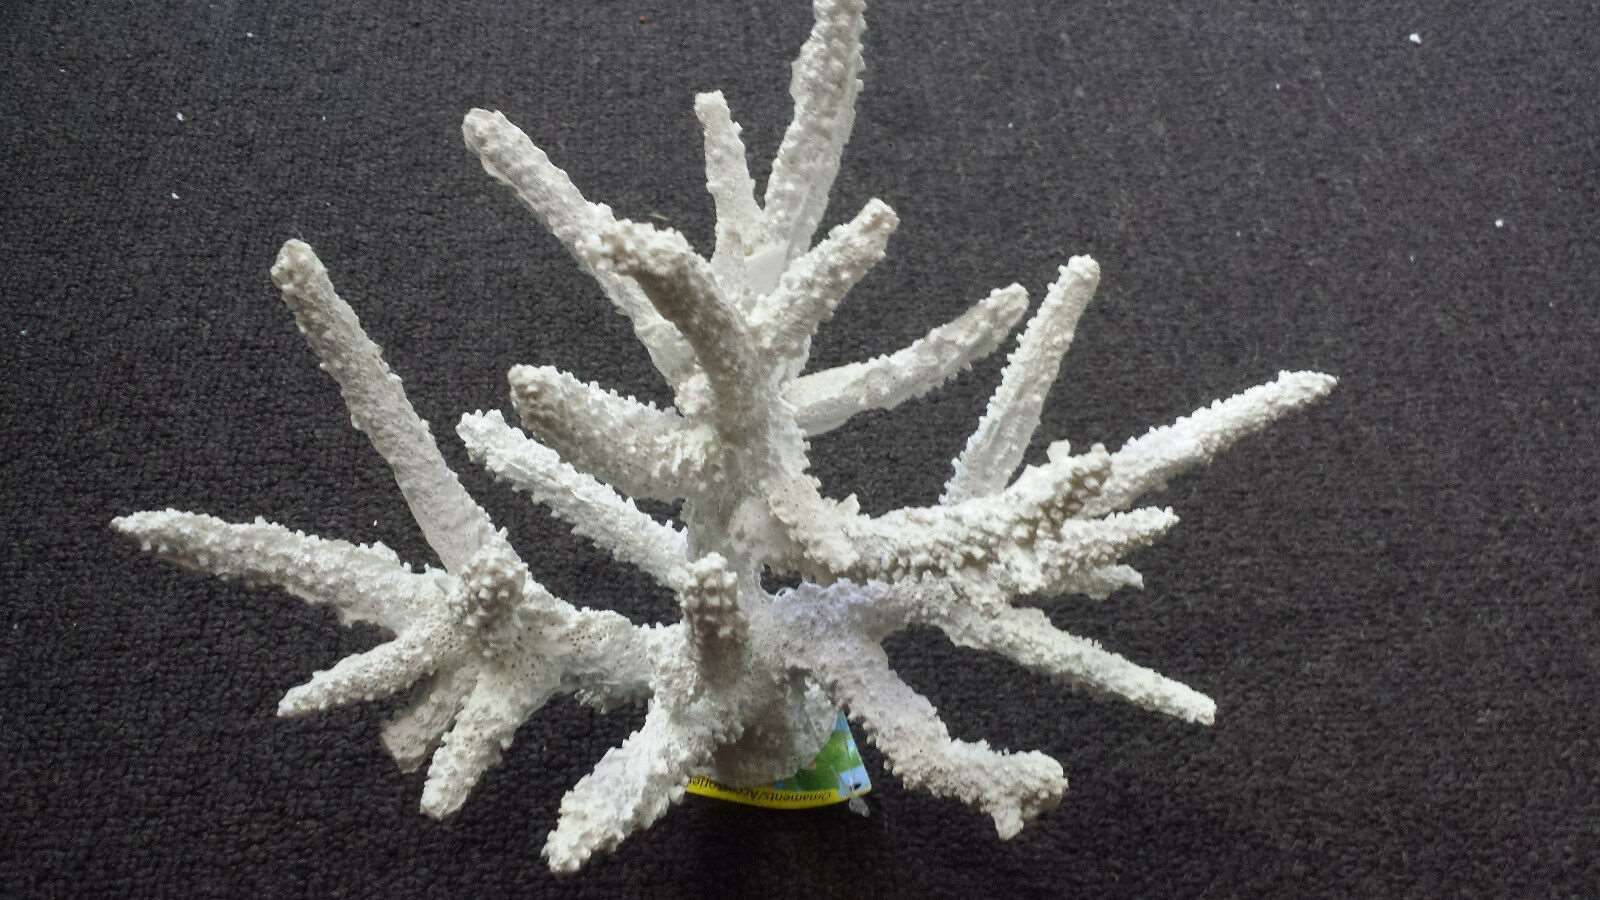 New Aqua One Aquarium Ornamental White Acro Coral Medium size